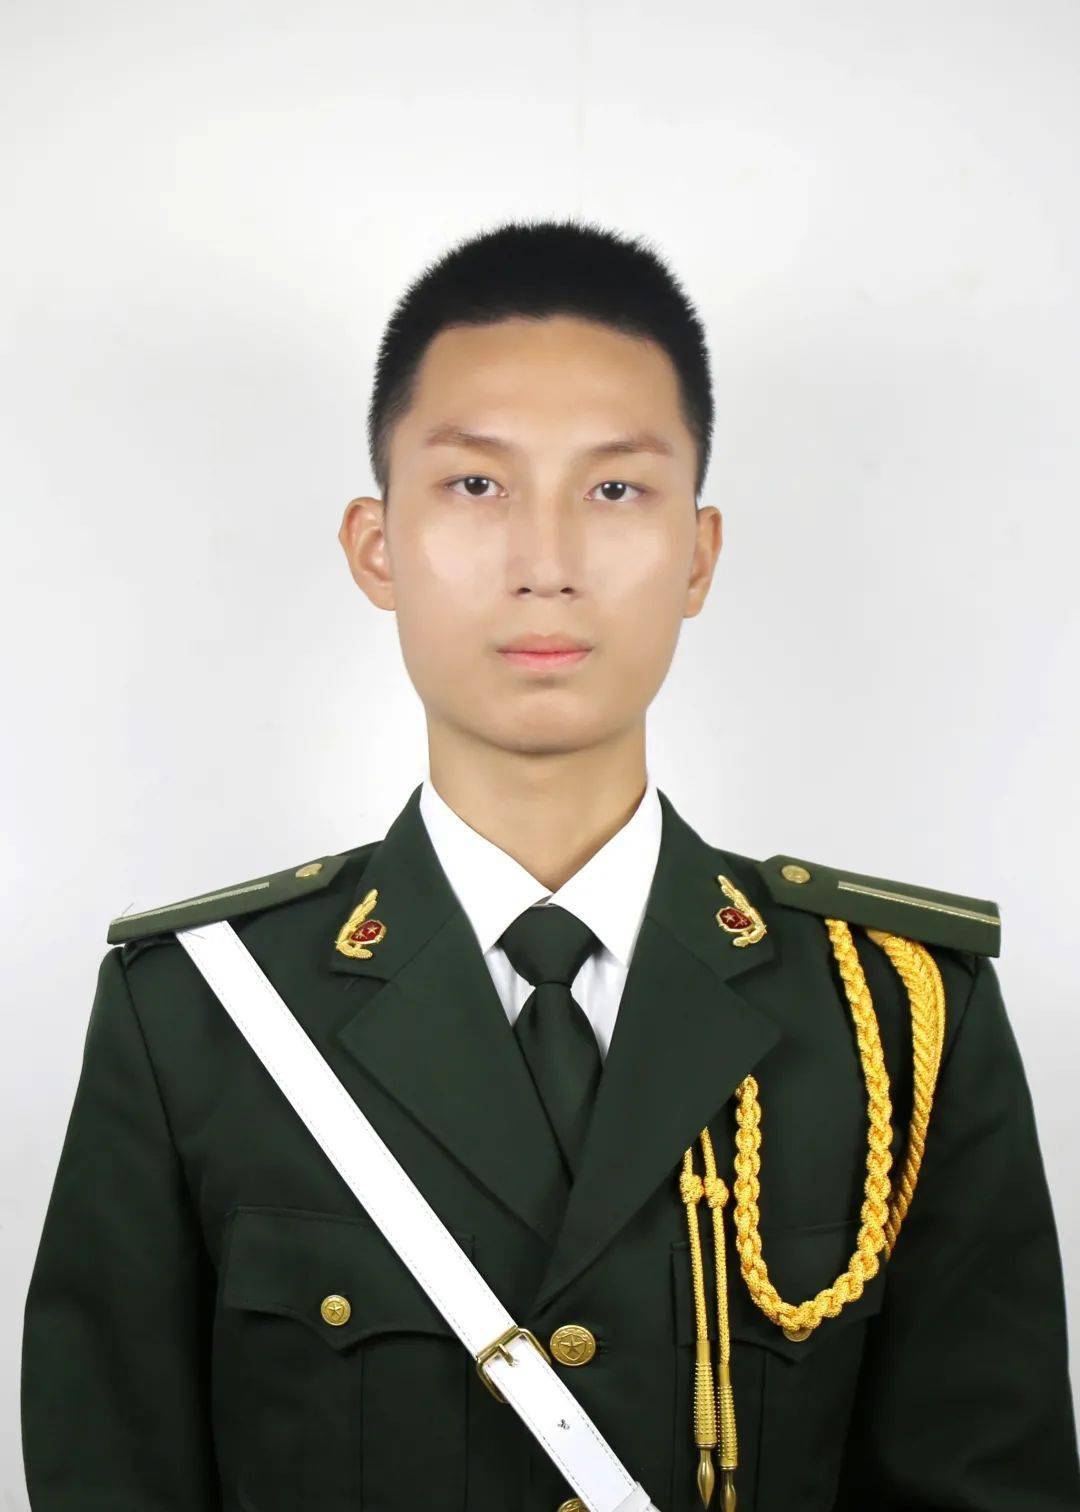 中国士兵头发型图片